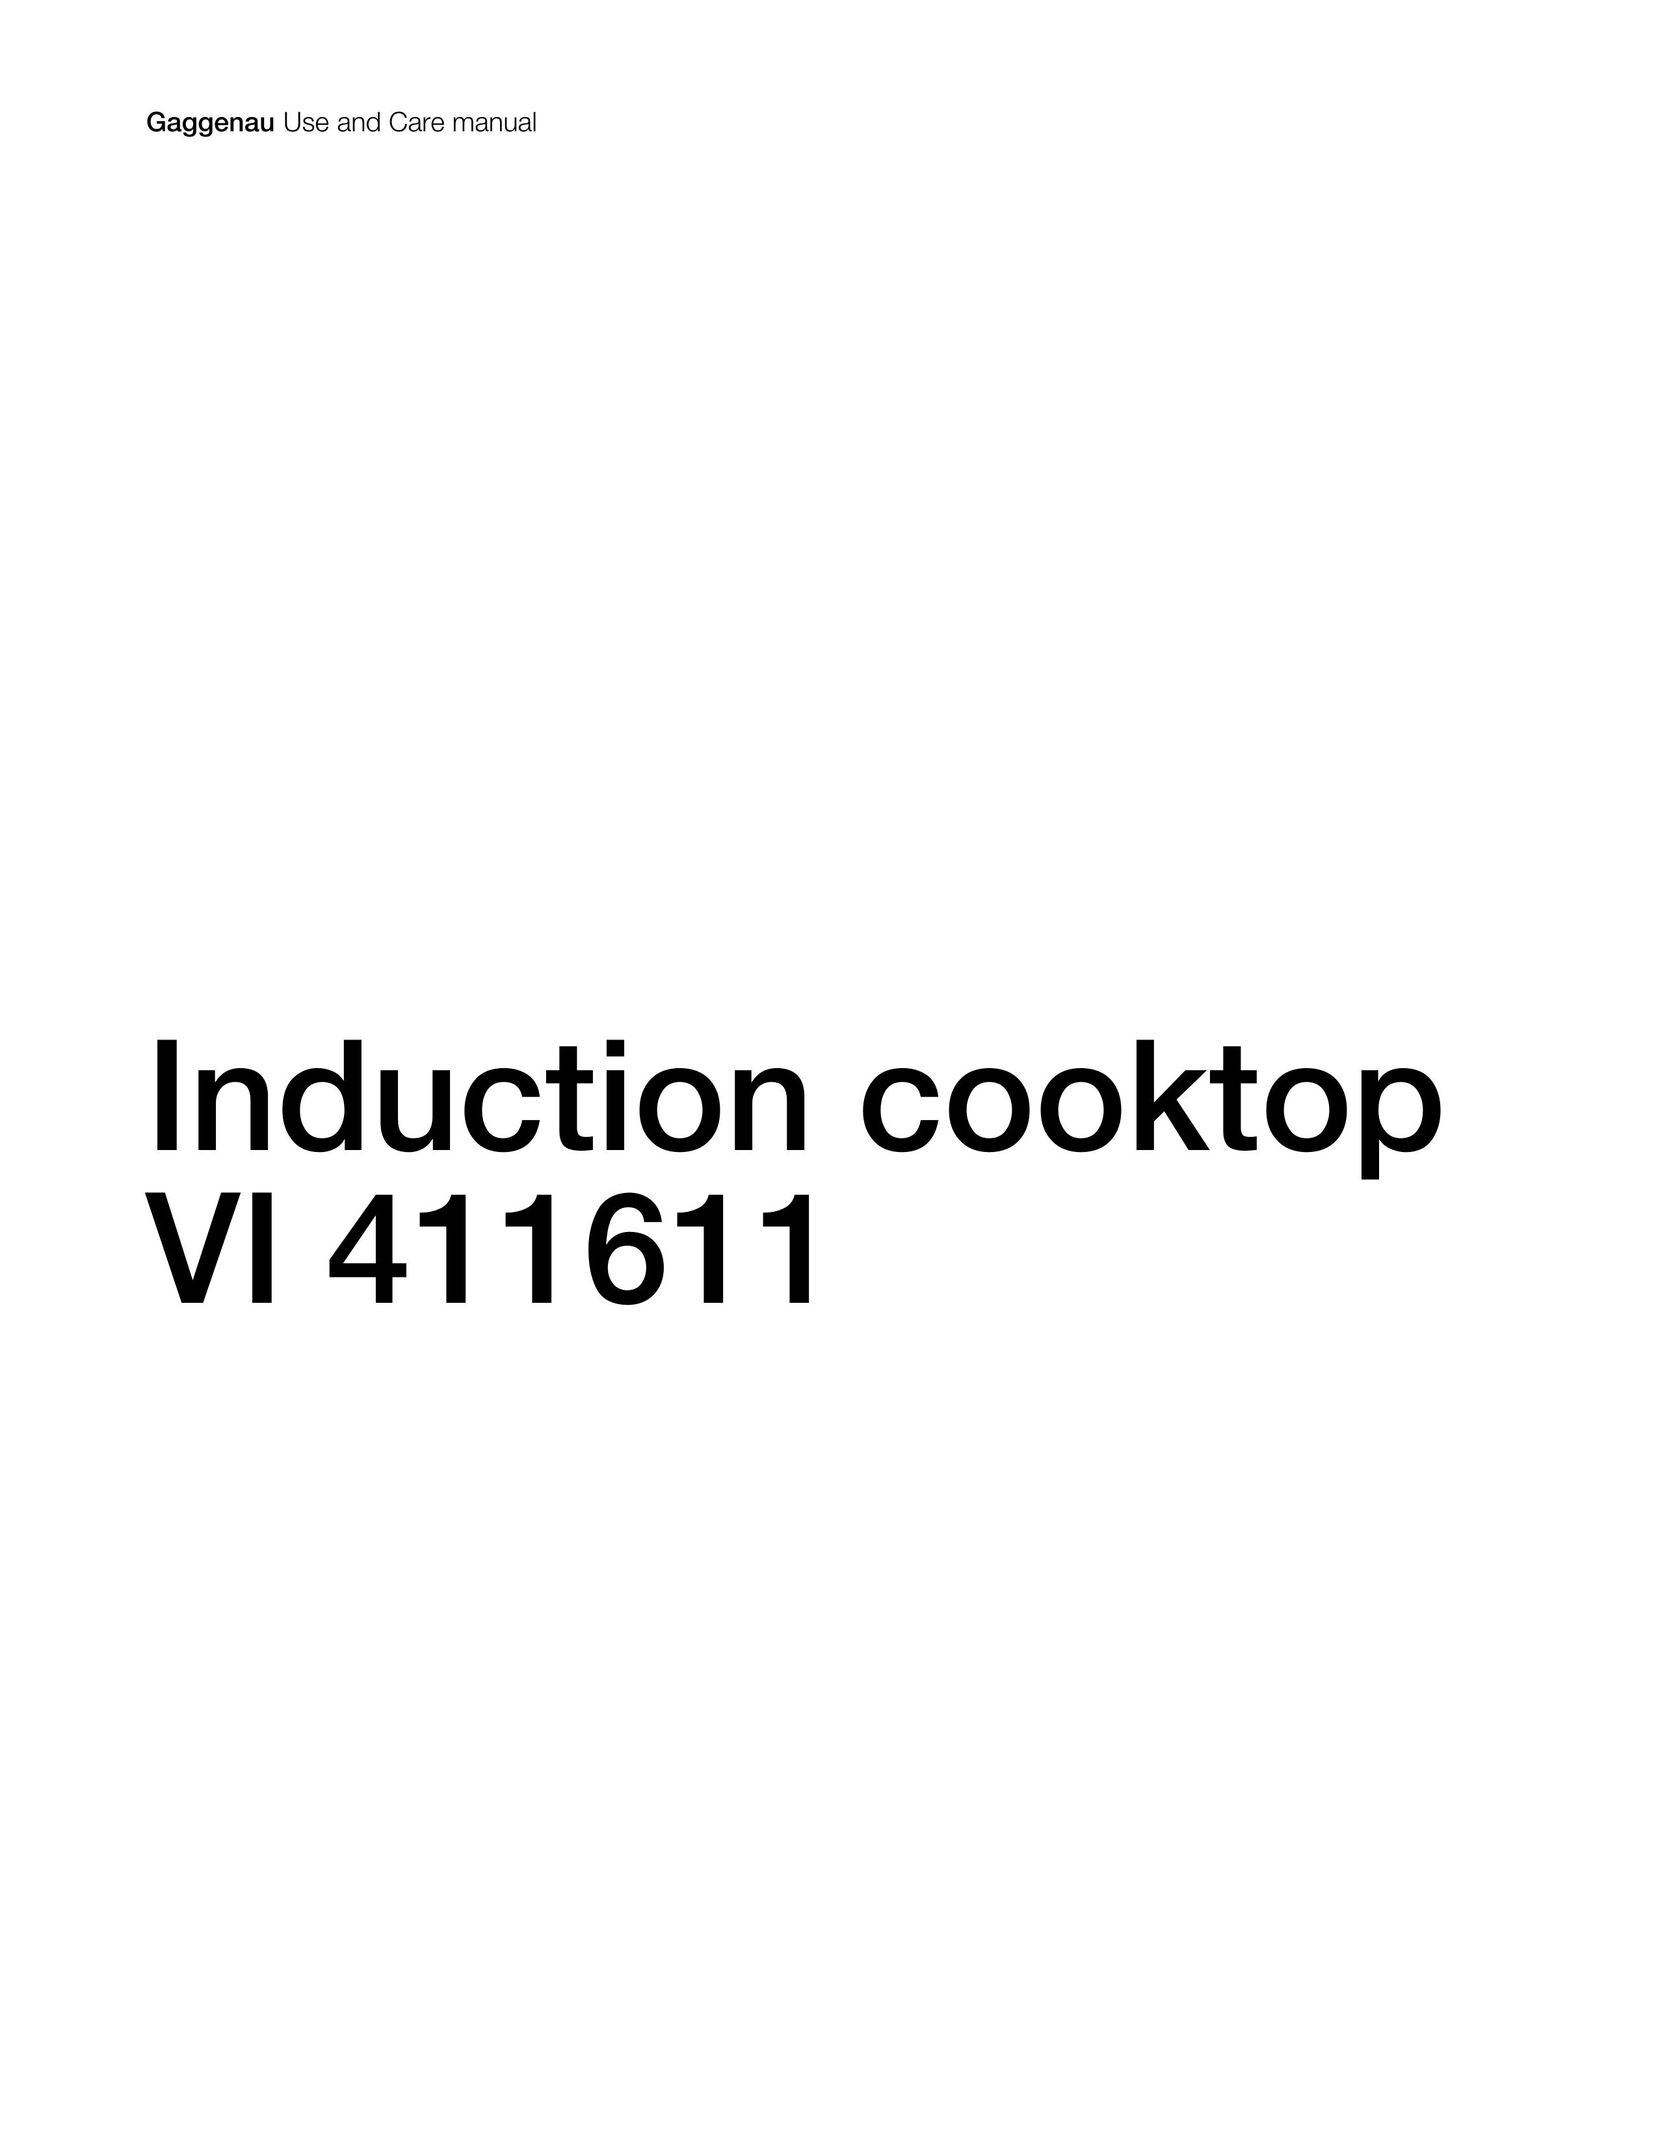 Gaggenau VI 411611 Cooktop User Manual